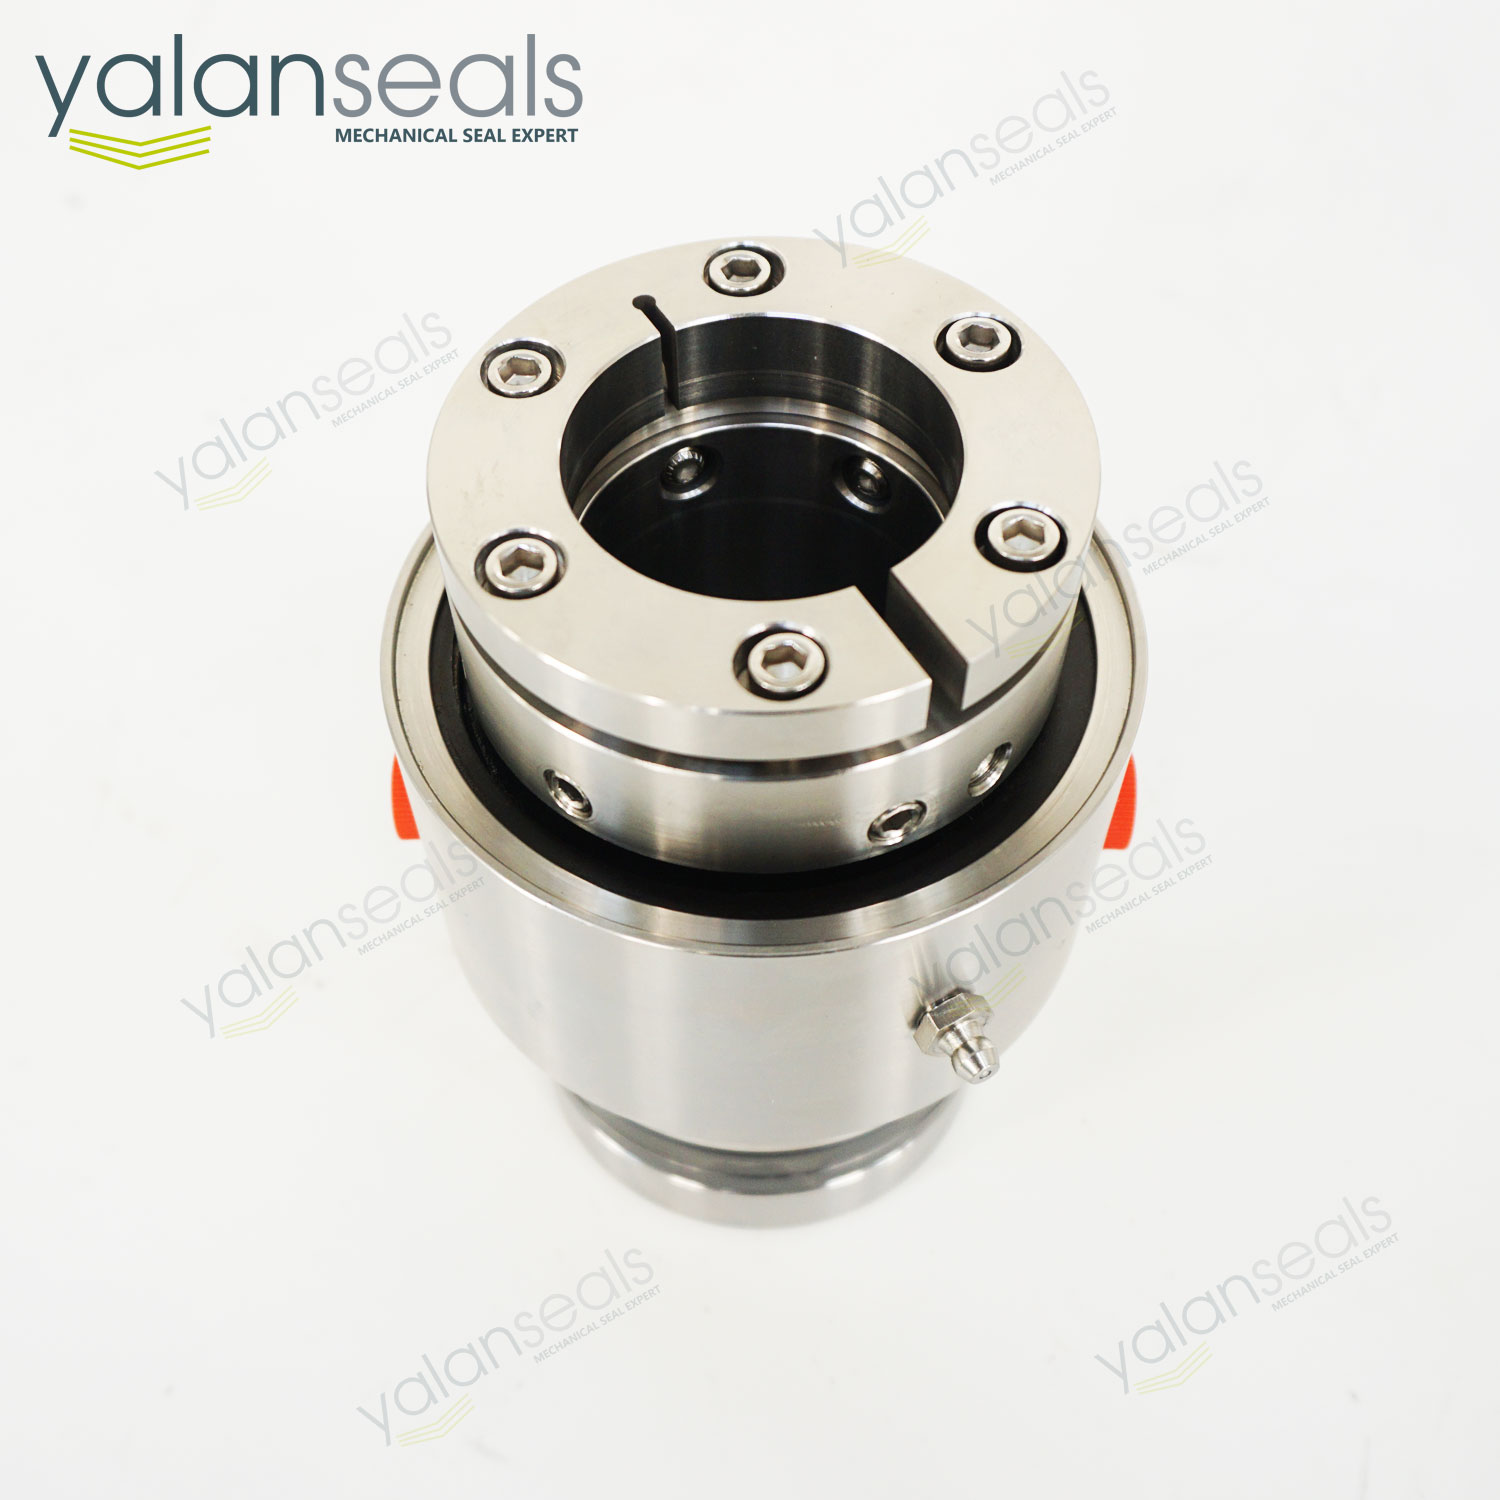 YALAN SCC428 Mechanical Seal for Sharpe Mixers